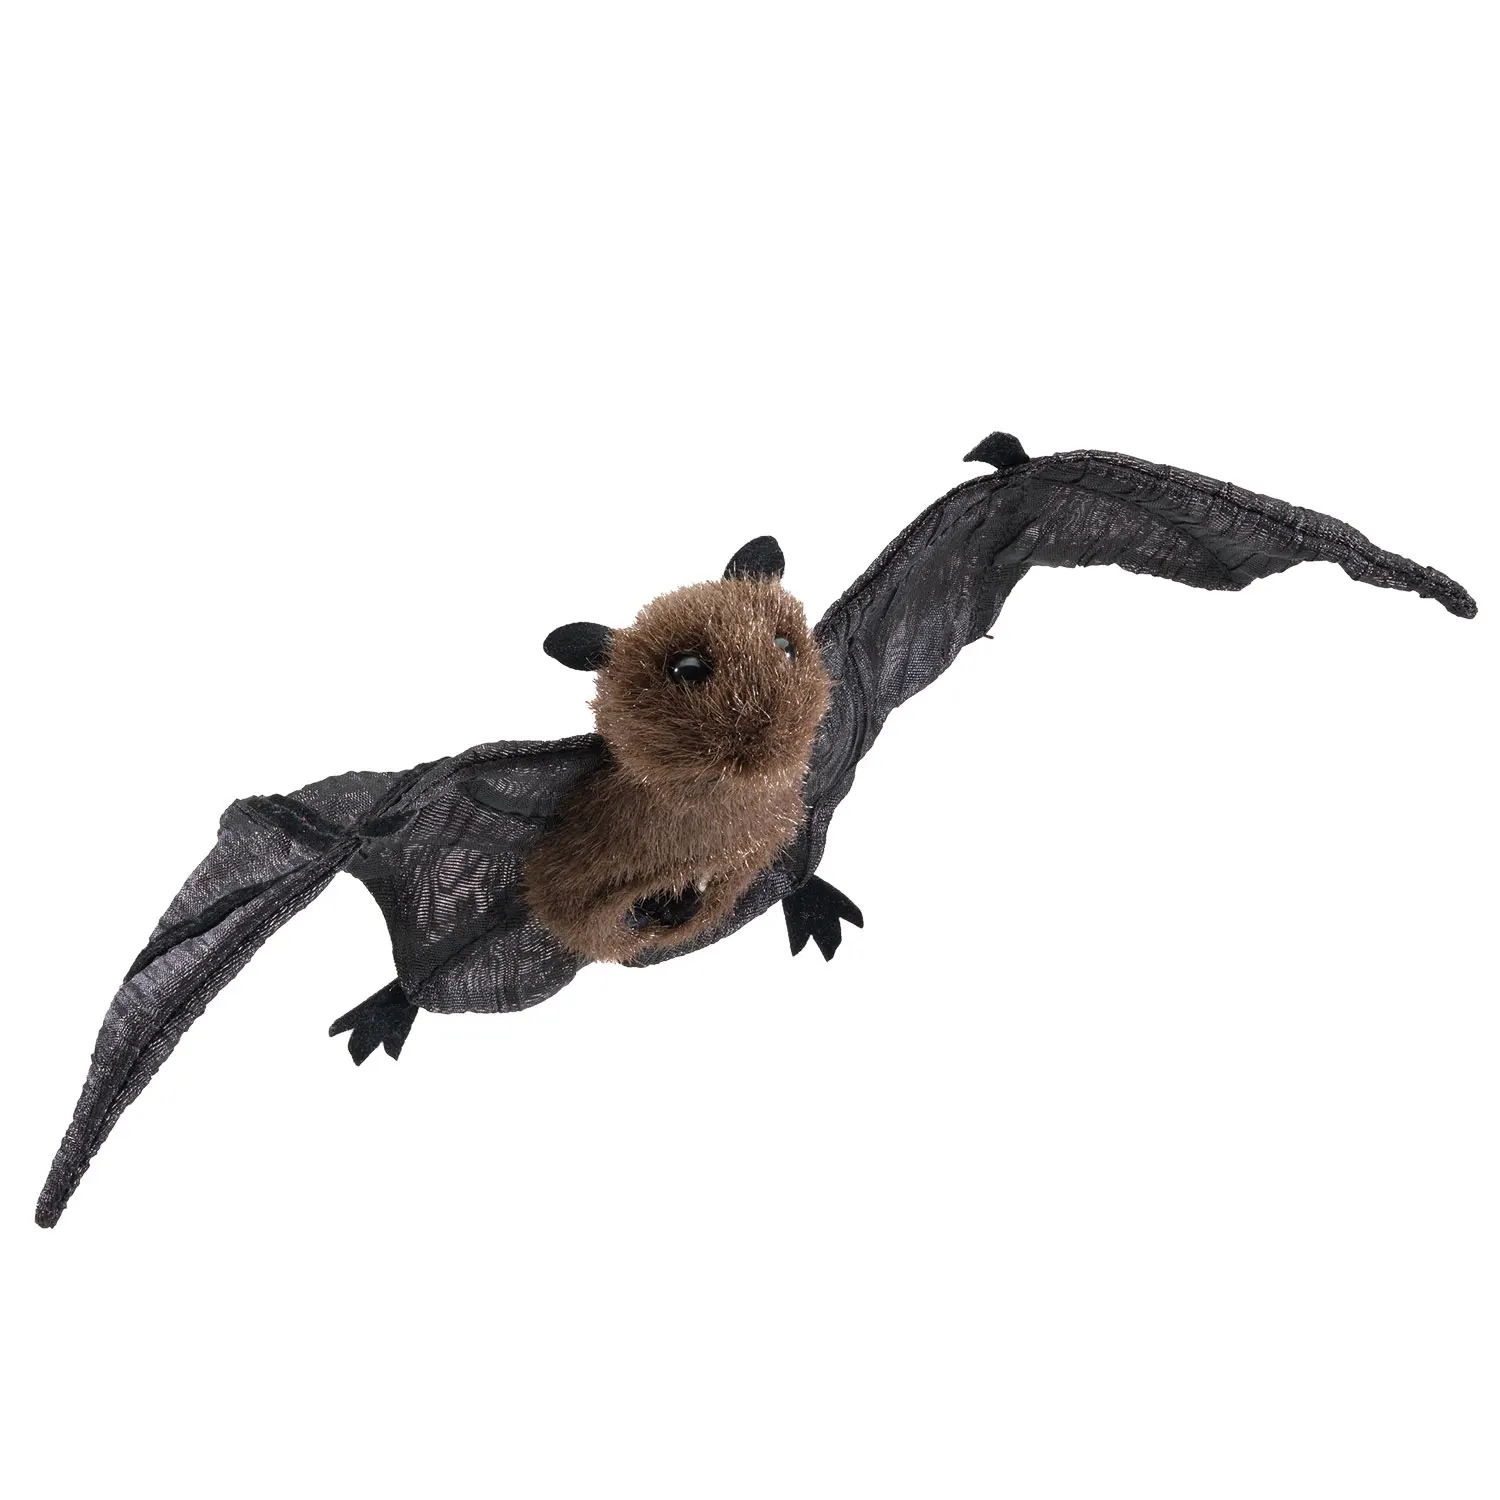 Mini Bat